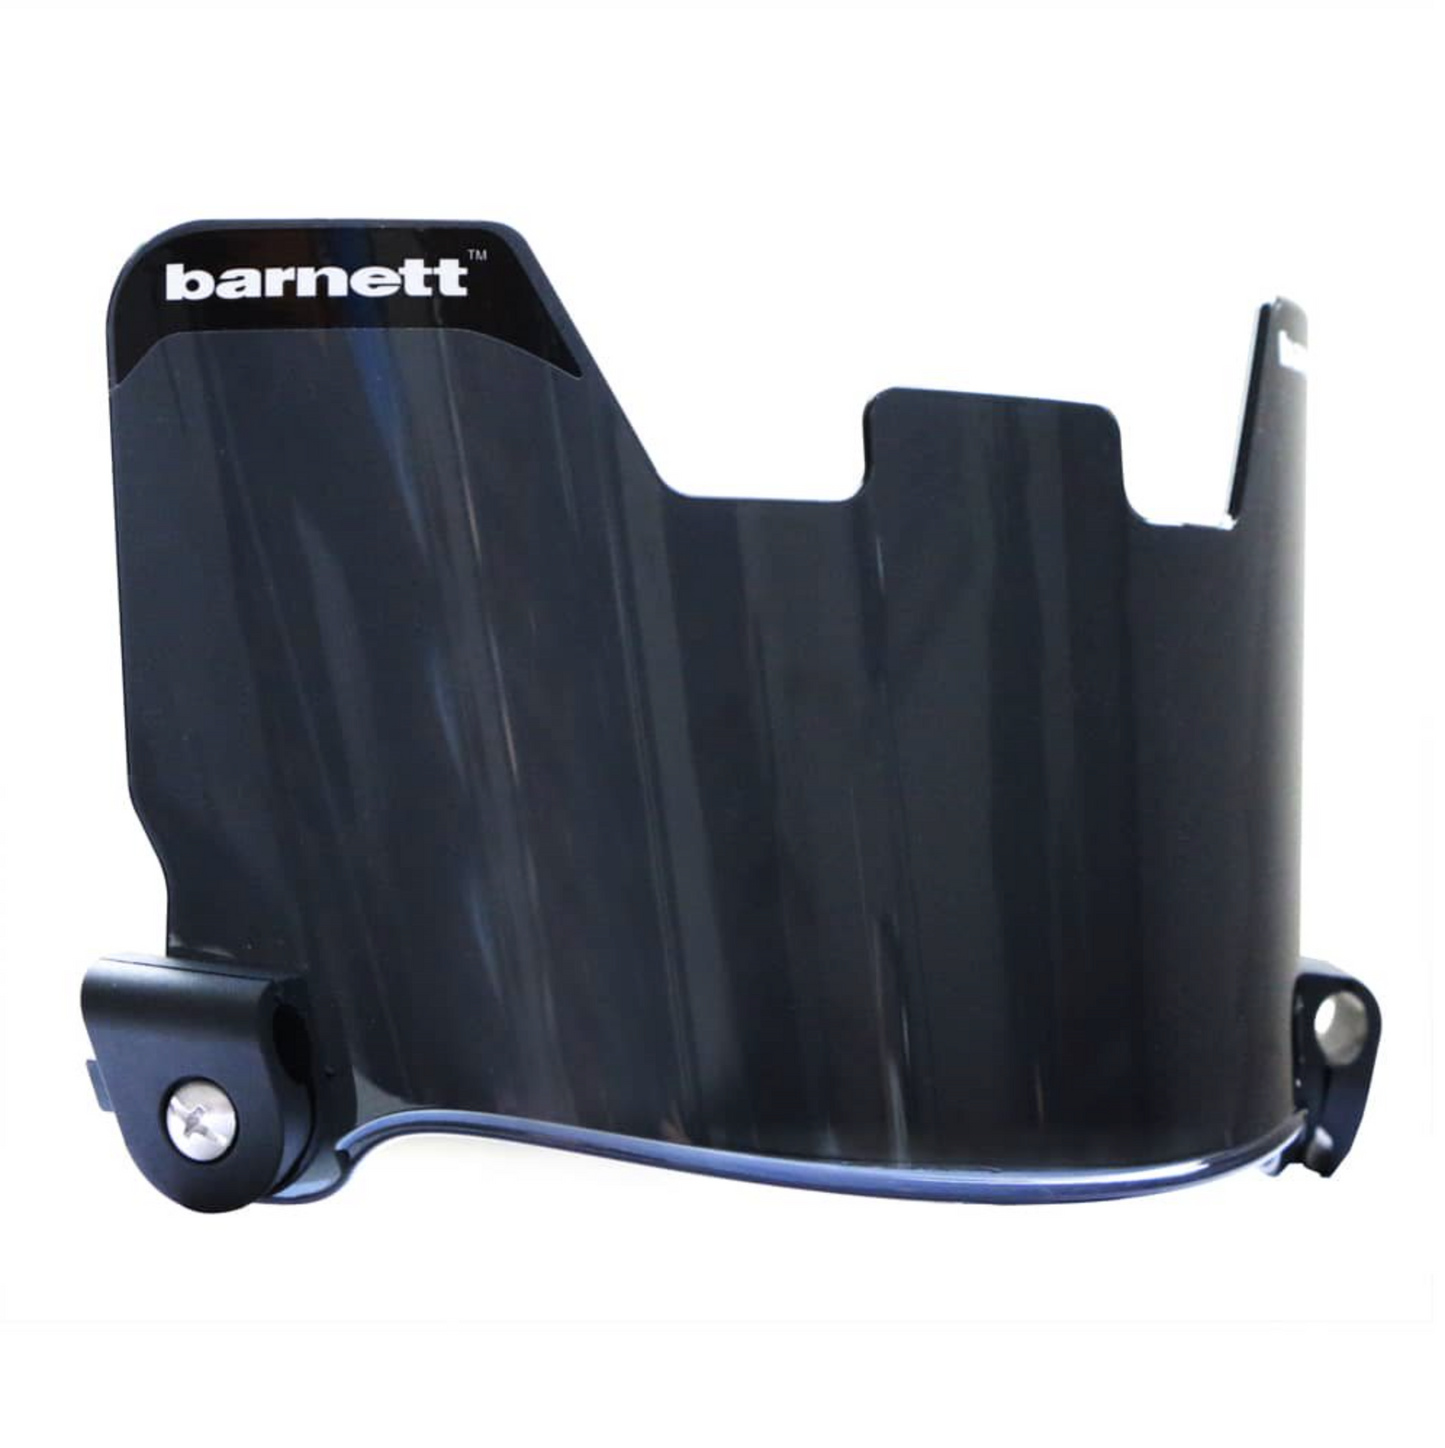 Barnett Football Eyeshield / Visor, eyes-shield, Black